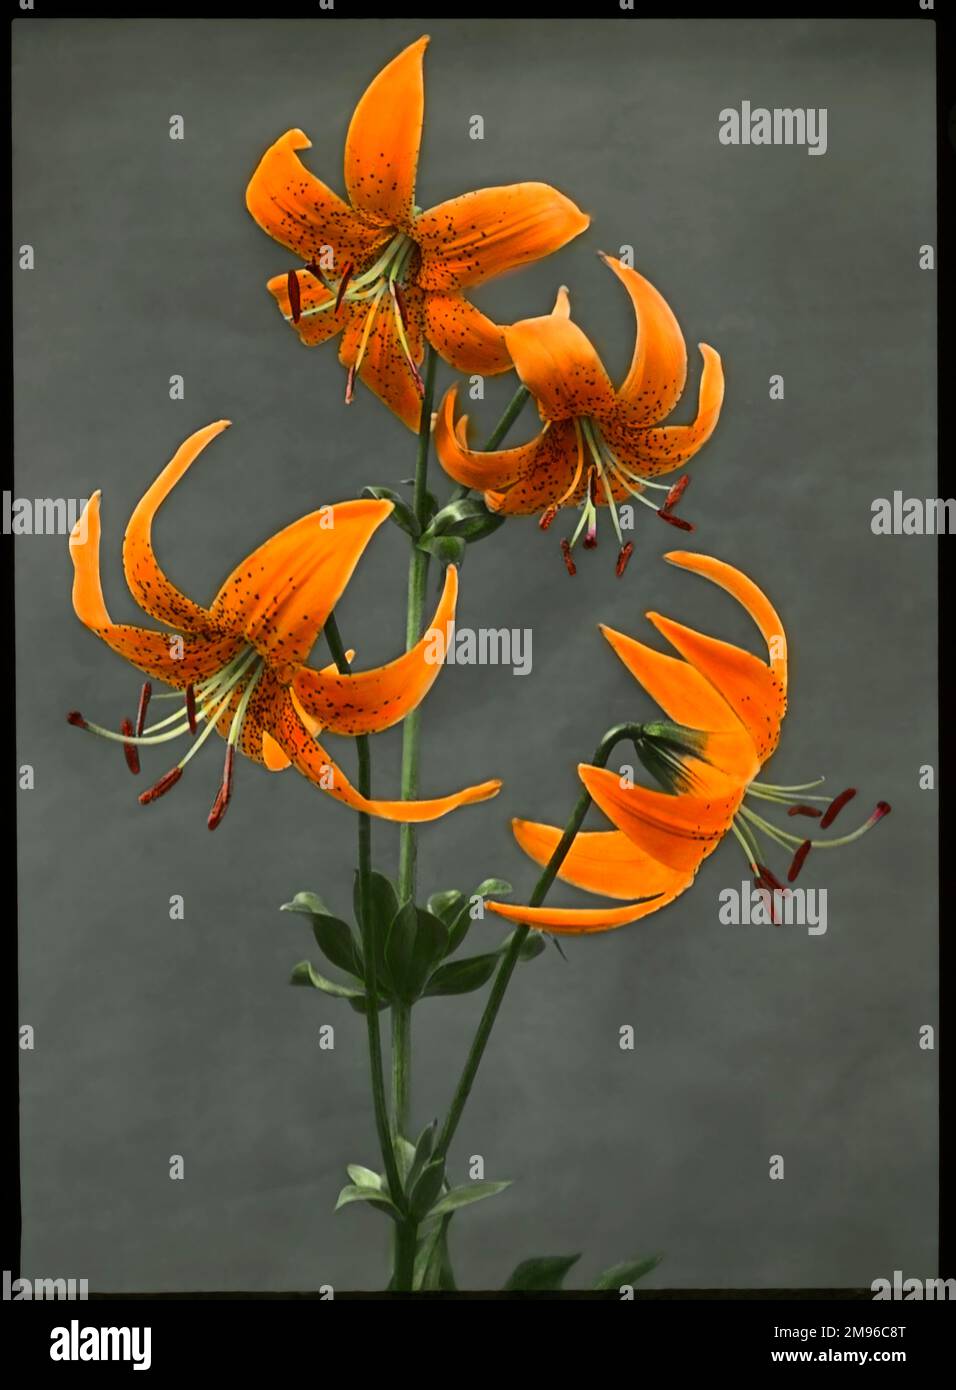 Lilium Humboldtii (Humboldt's Lily), une fleur de la famille des Liliaceae, avec des fleurs orange vif avec des taches rouges. Il porte le nom du naturaliste et explorateur, Alexander von Humboldt. Banque D'Images